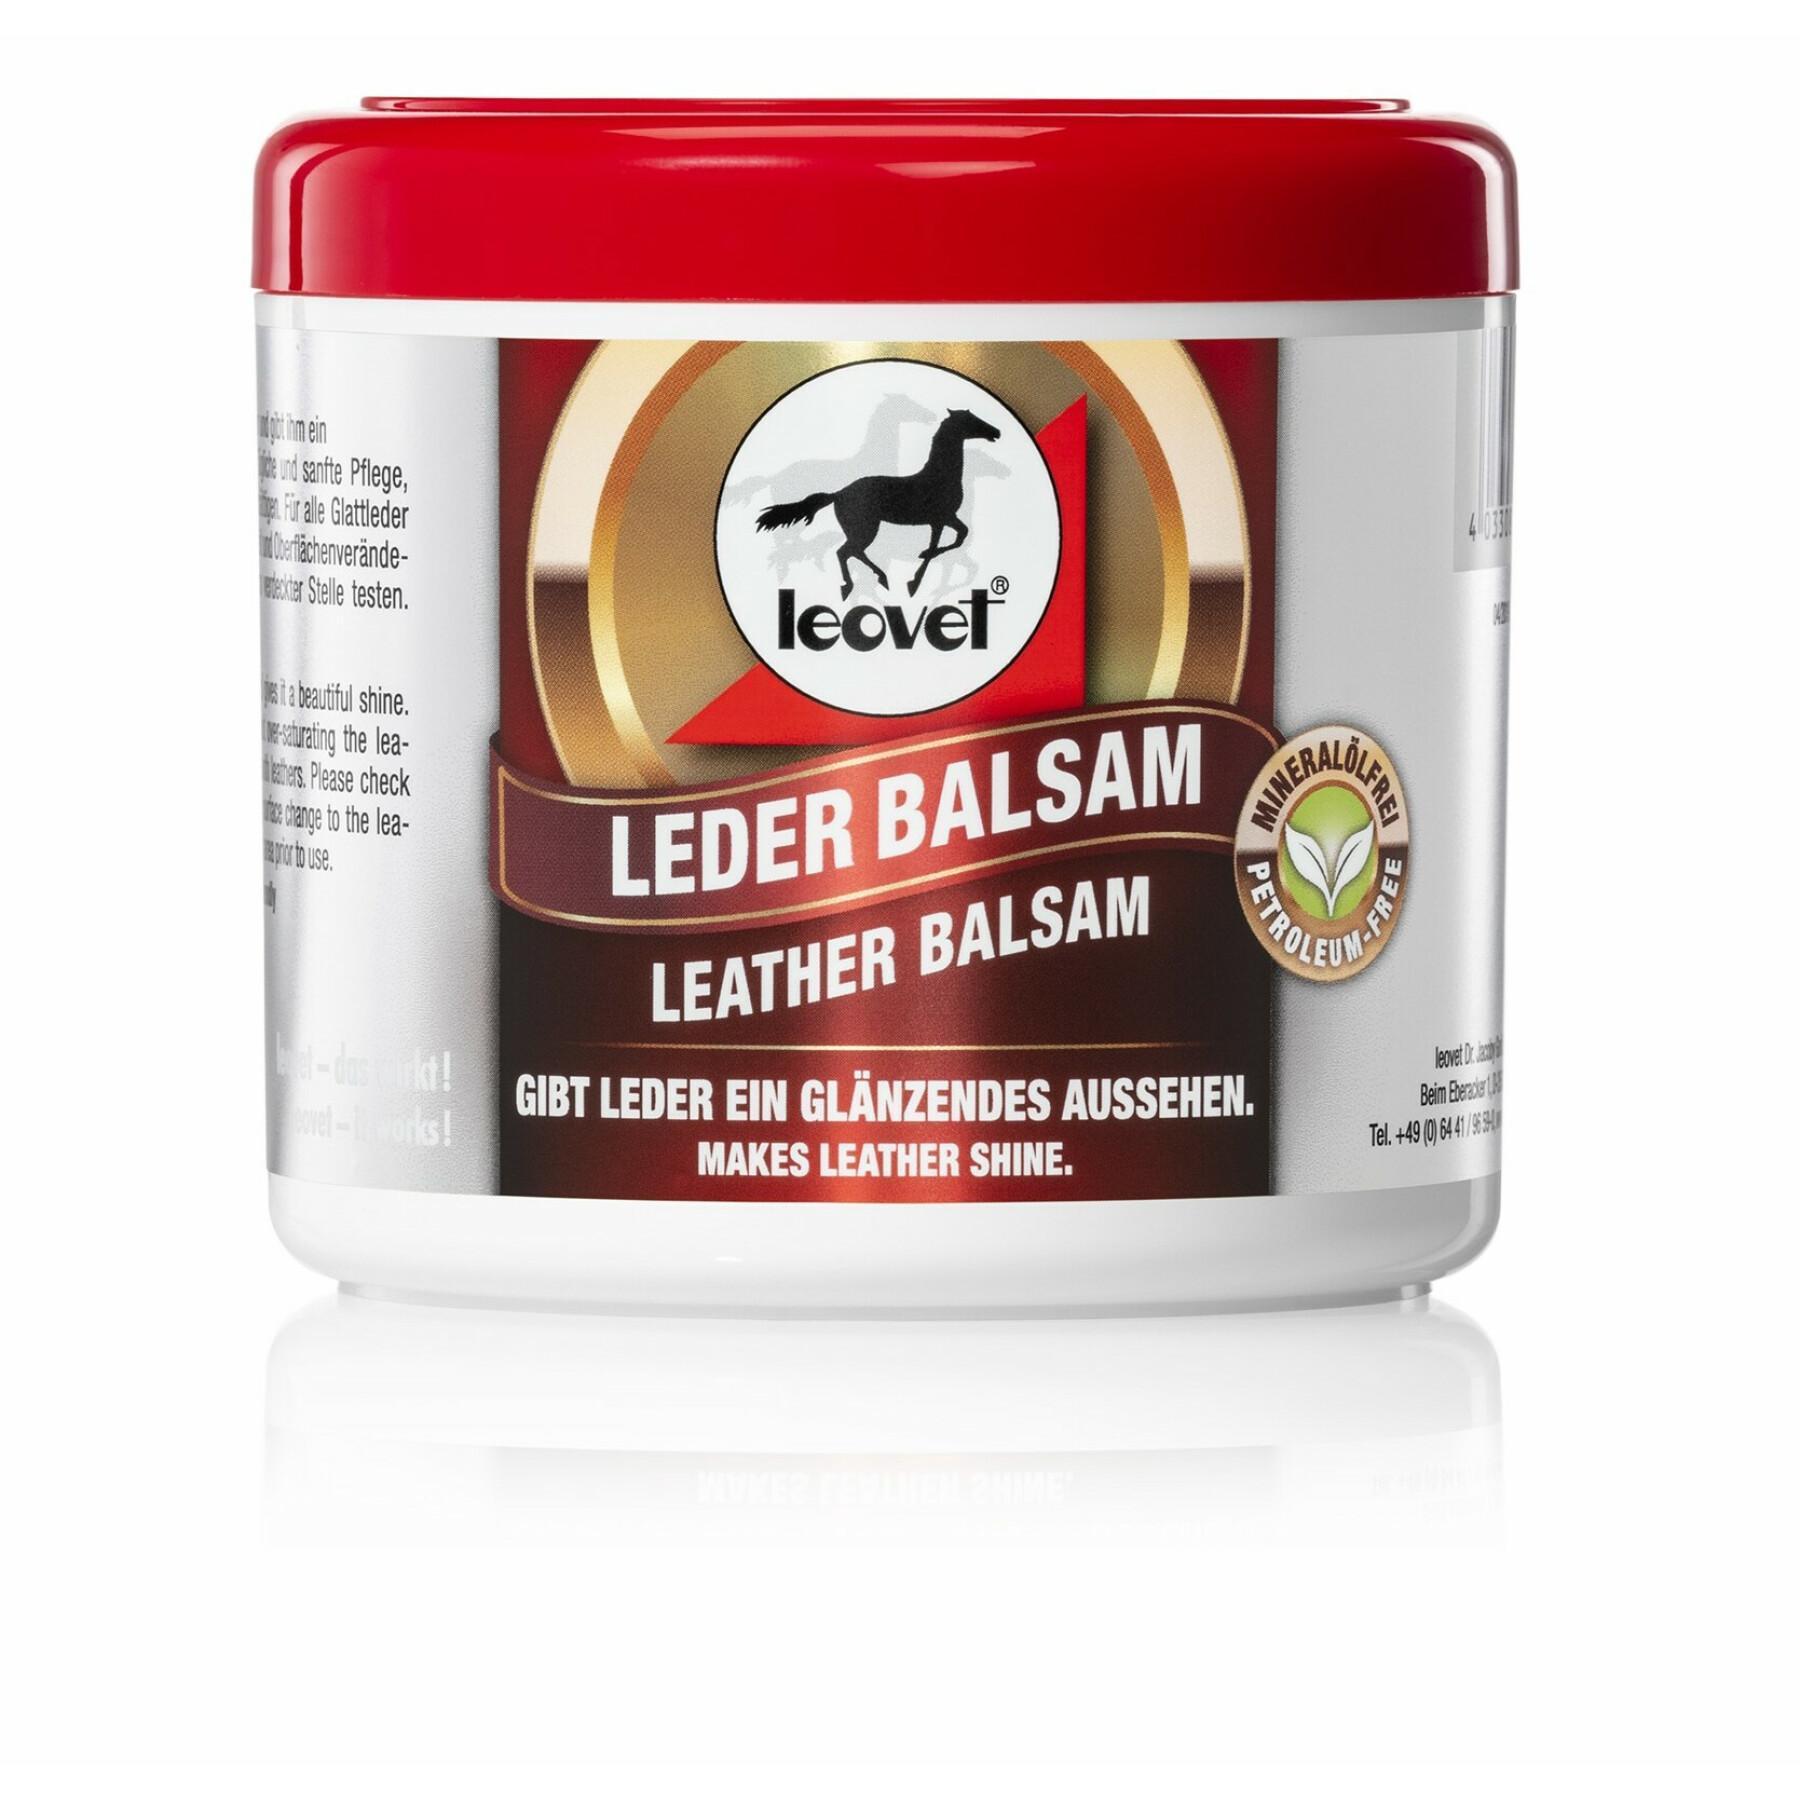 Balsam für Leder Leovet 500 ml